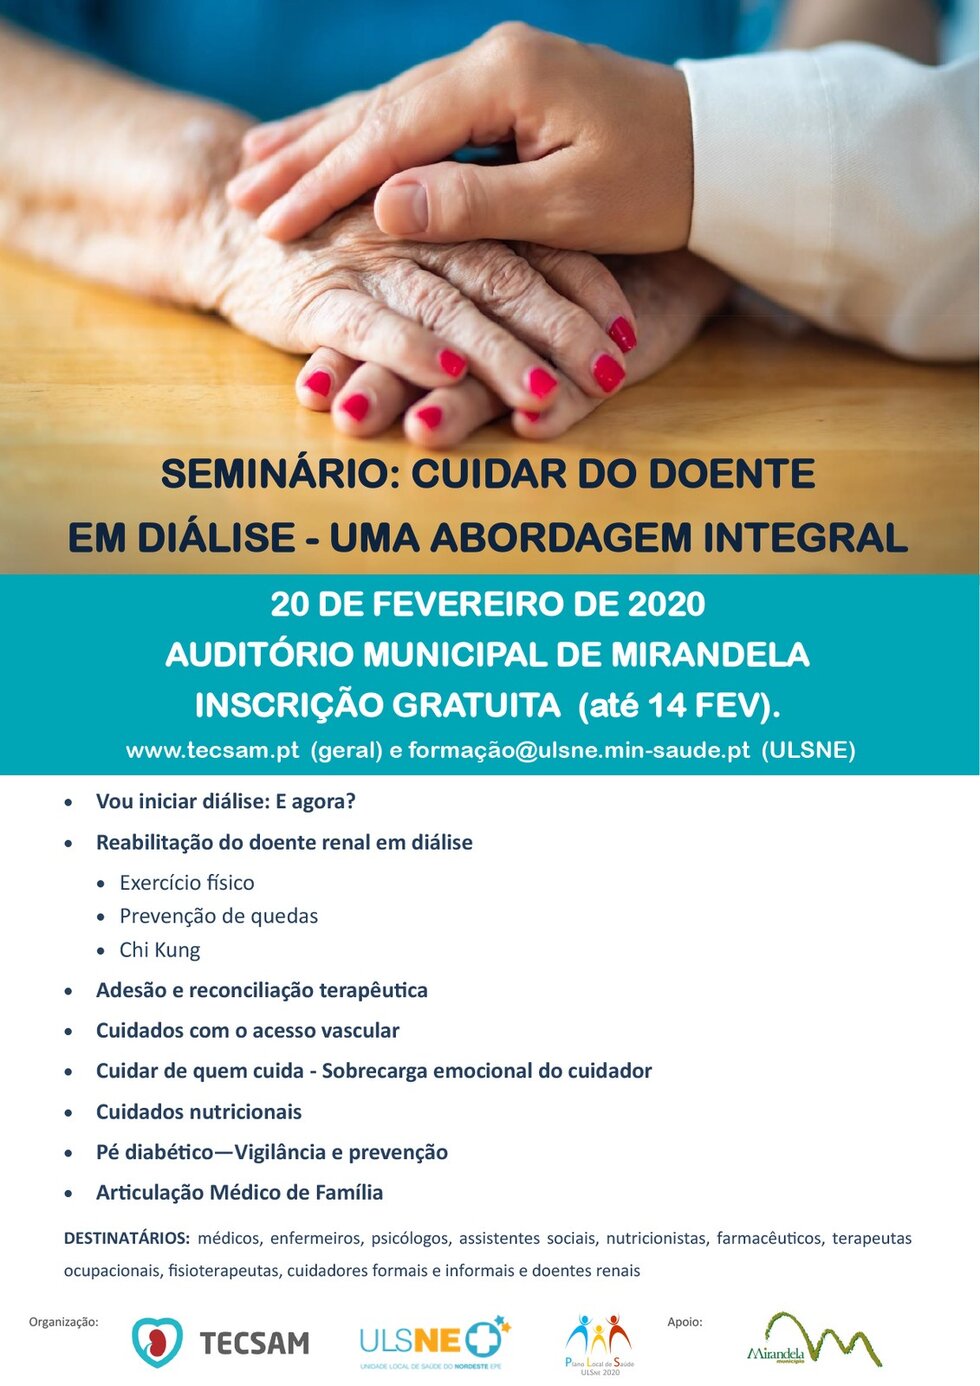 seminario___cuidar_do_doente_em_dialise